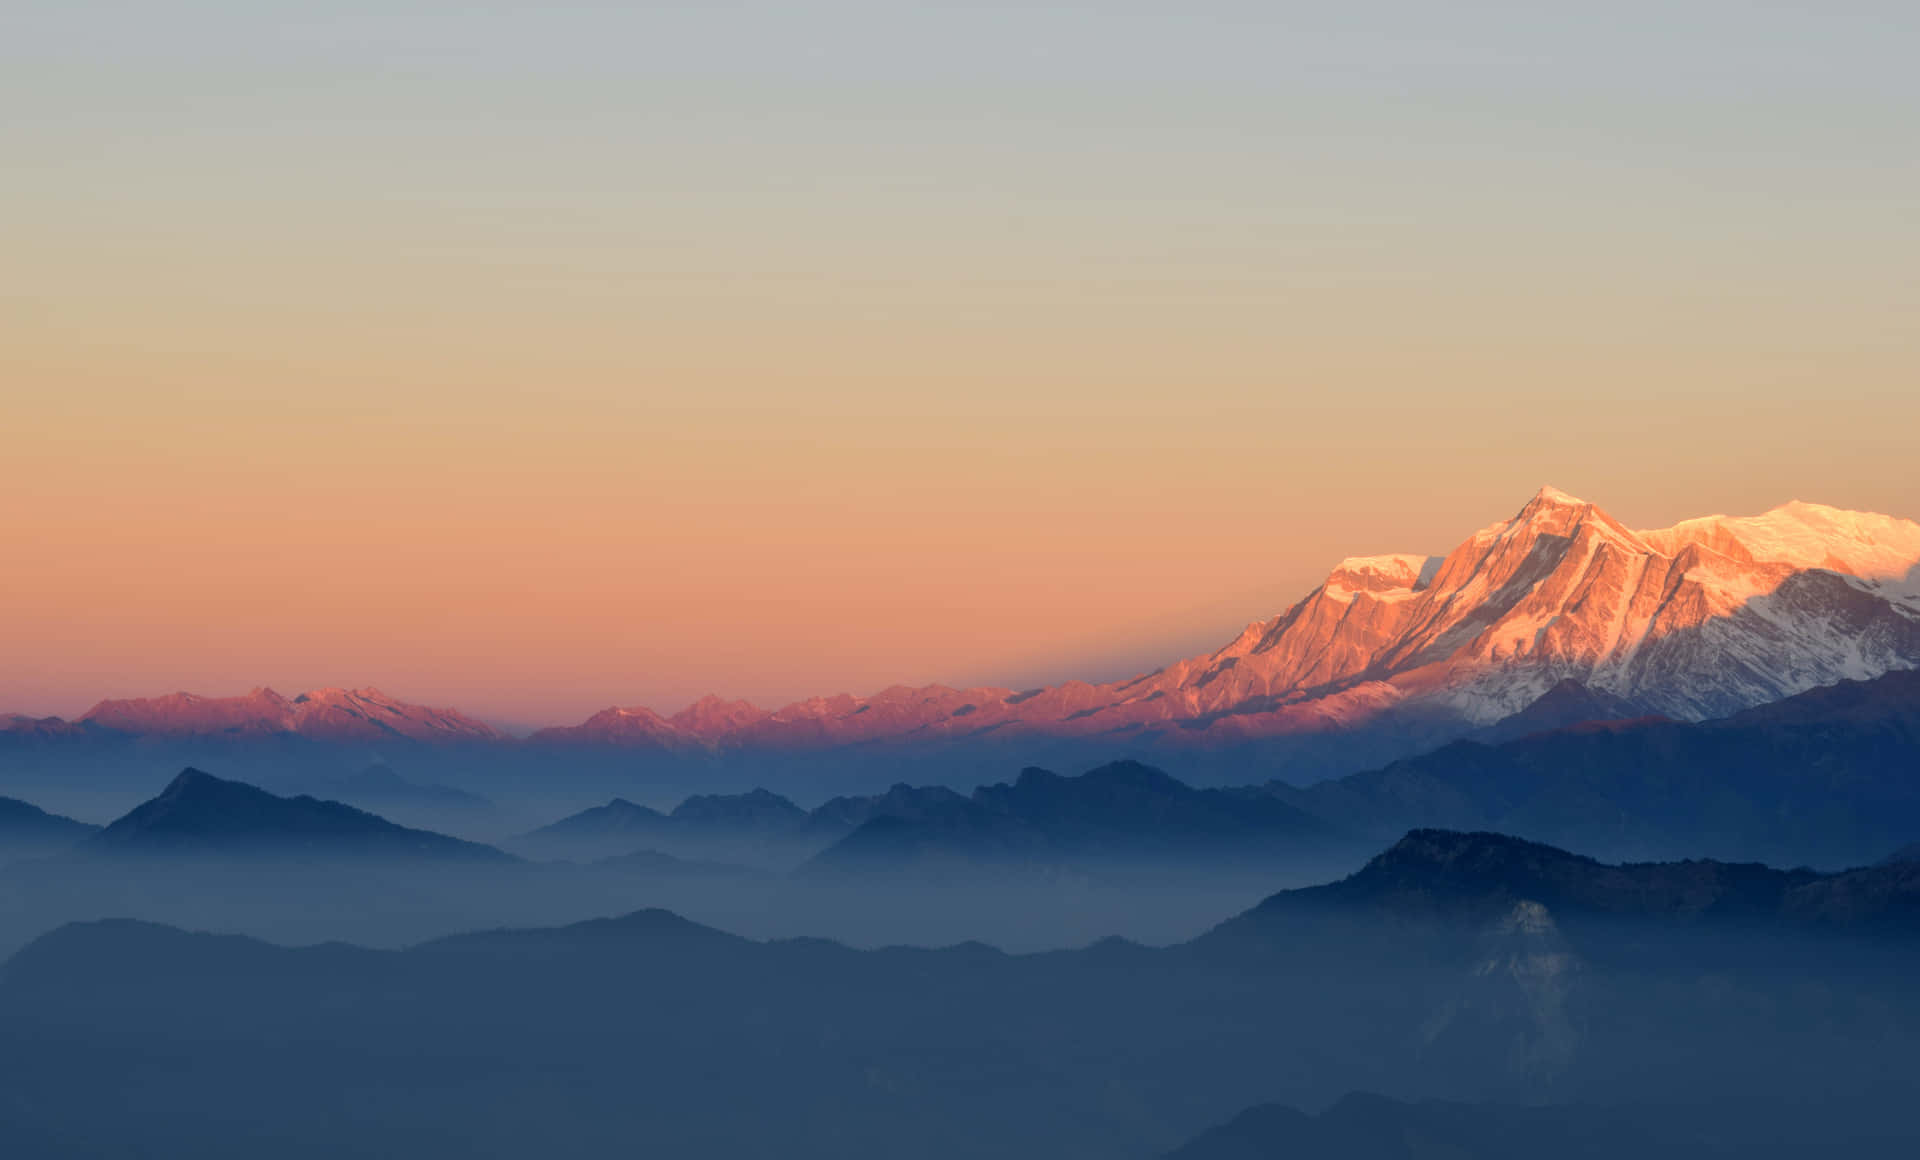 Njutav En Häpnadsväckande Utsikt Över De Majestätiska Himalayabergen På Din Datorskärm Eller Mobilbakgrund.